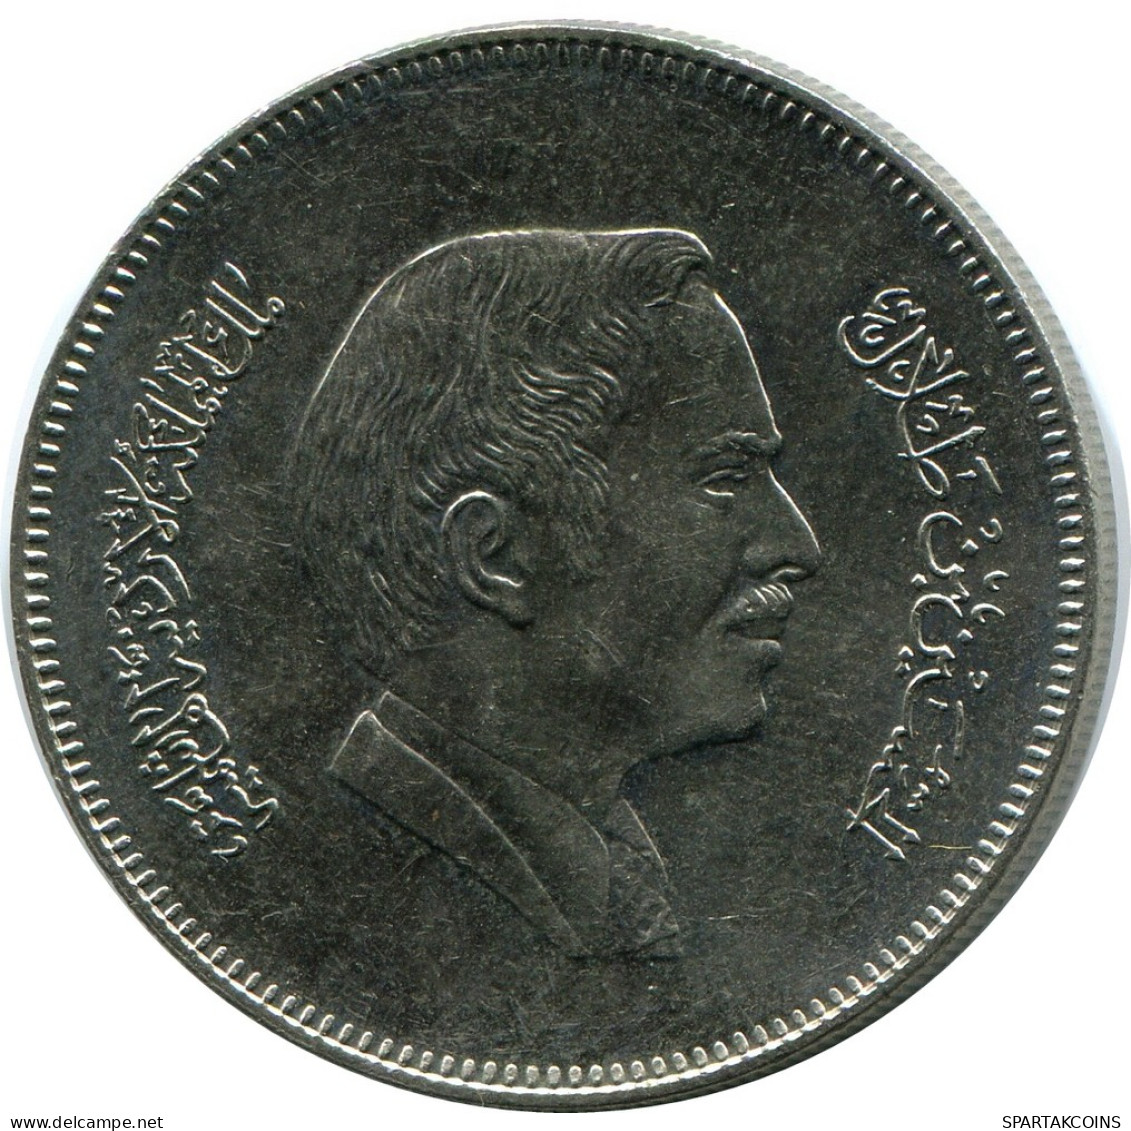 ½ DIRHAM / 50 FILS 1991 JORDAN Coin #AP078.U - Jordania